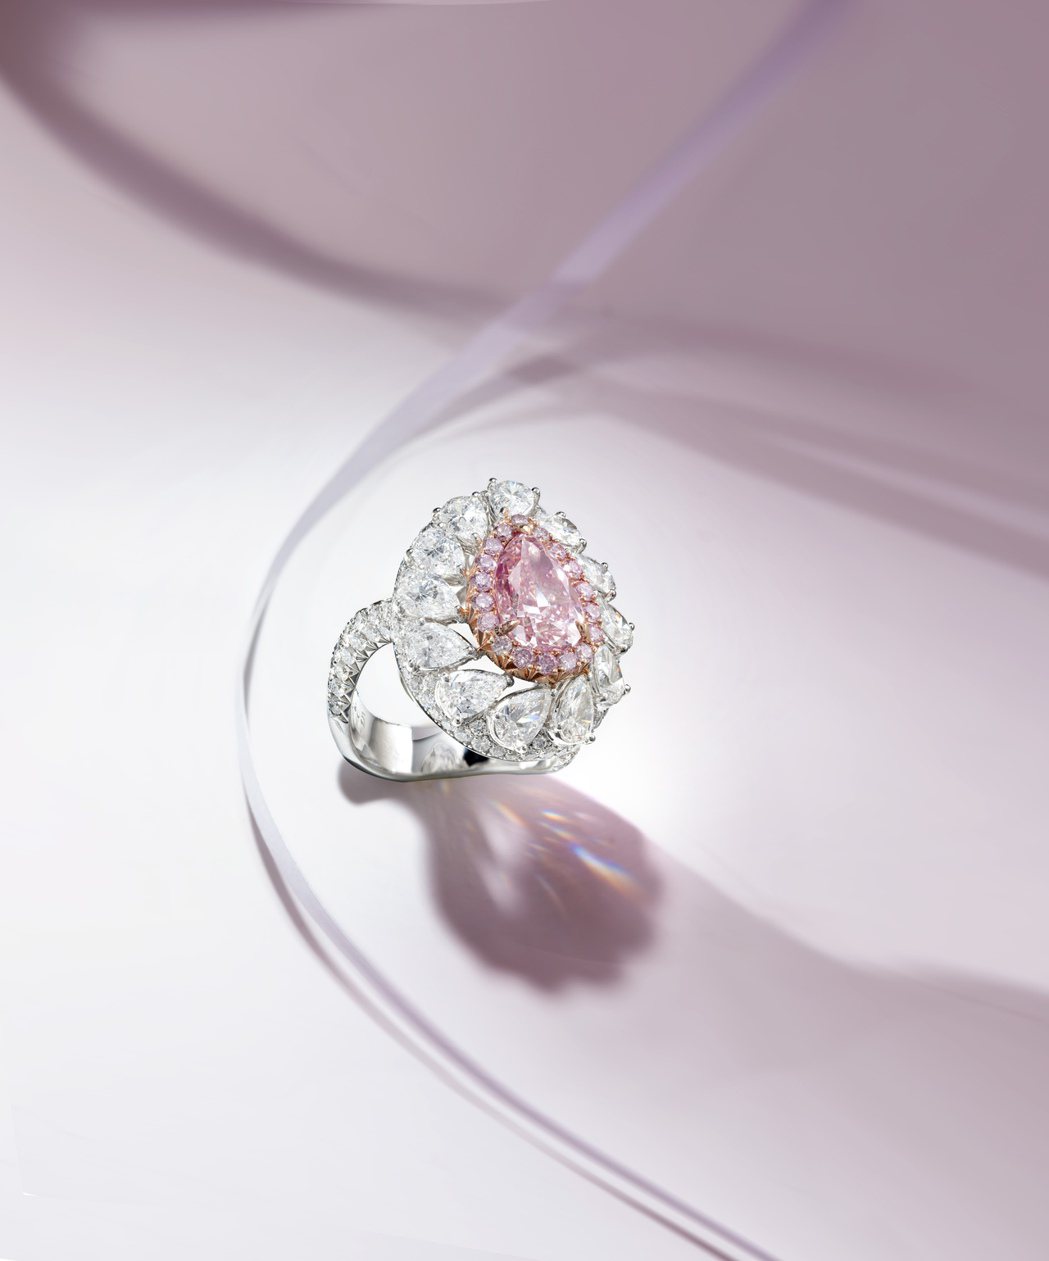 3.01克拉梨形濃彩粉紅色鑽石配鑽石戒指，附GIA證書。羅芙奧/提供